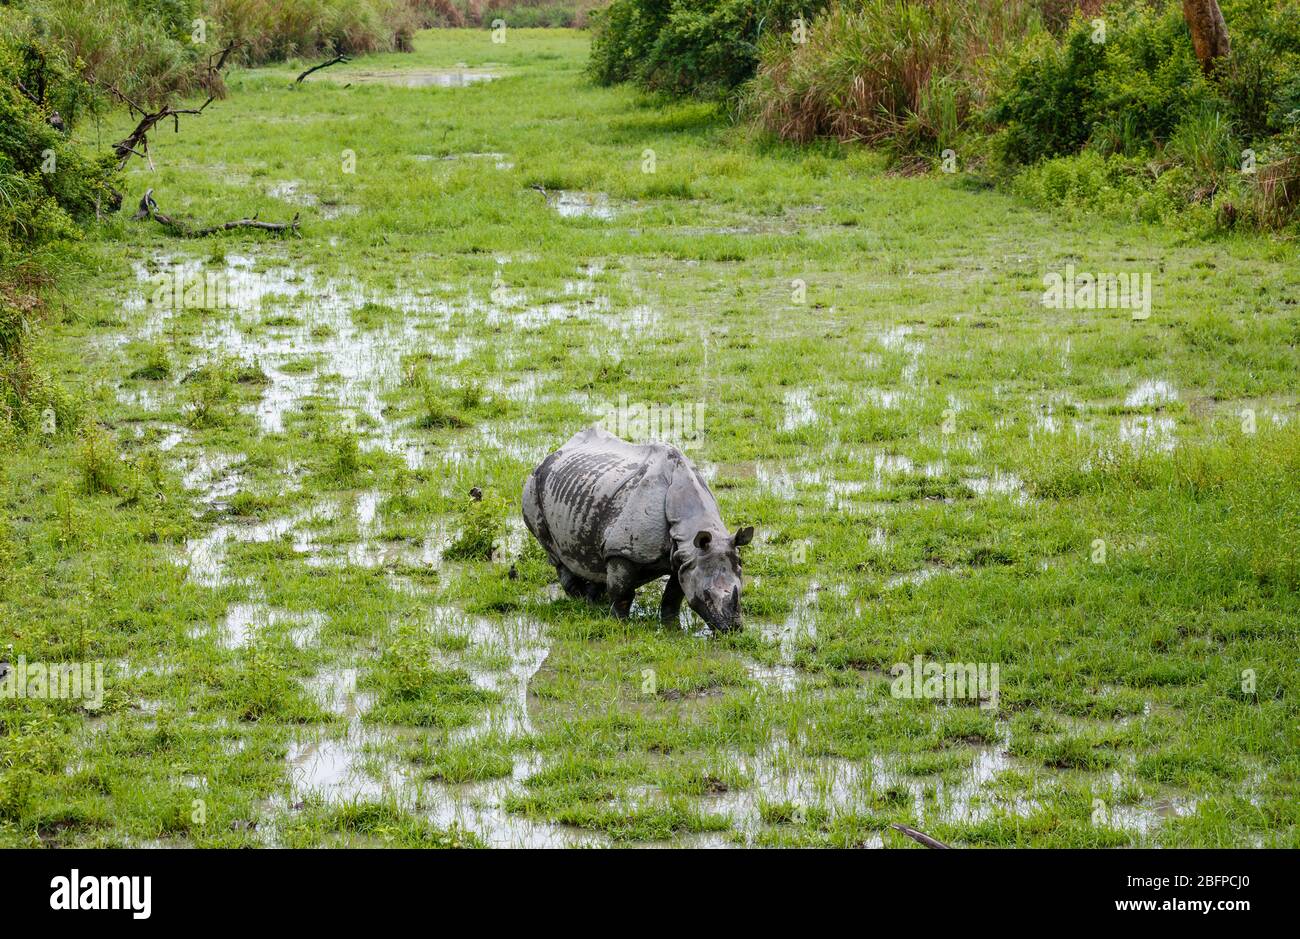 Un rinoceronte indiano (Rhinoceros unicornis) si ghiaccia nelle zone umide paludose nel Parco Nazionale di Kaziranga, Assam, India nordorientale Foto Stock